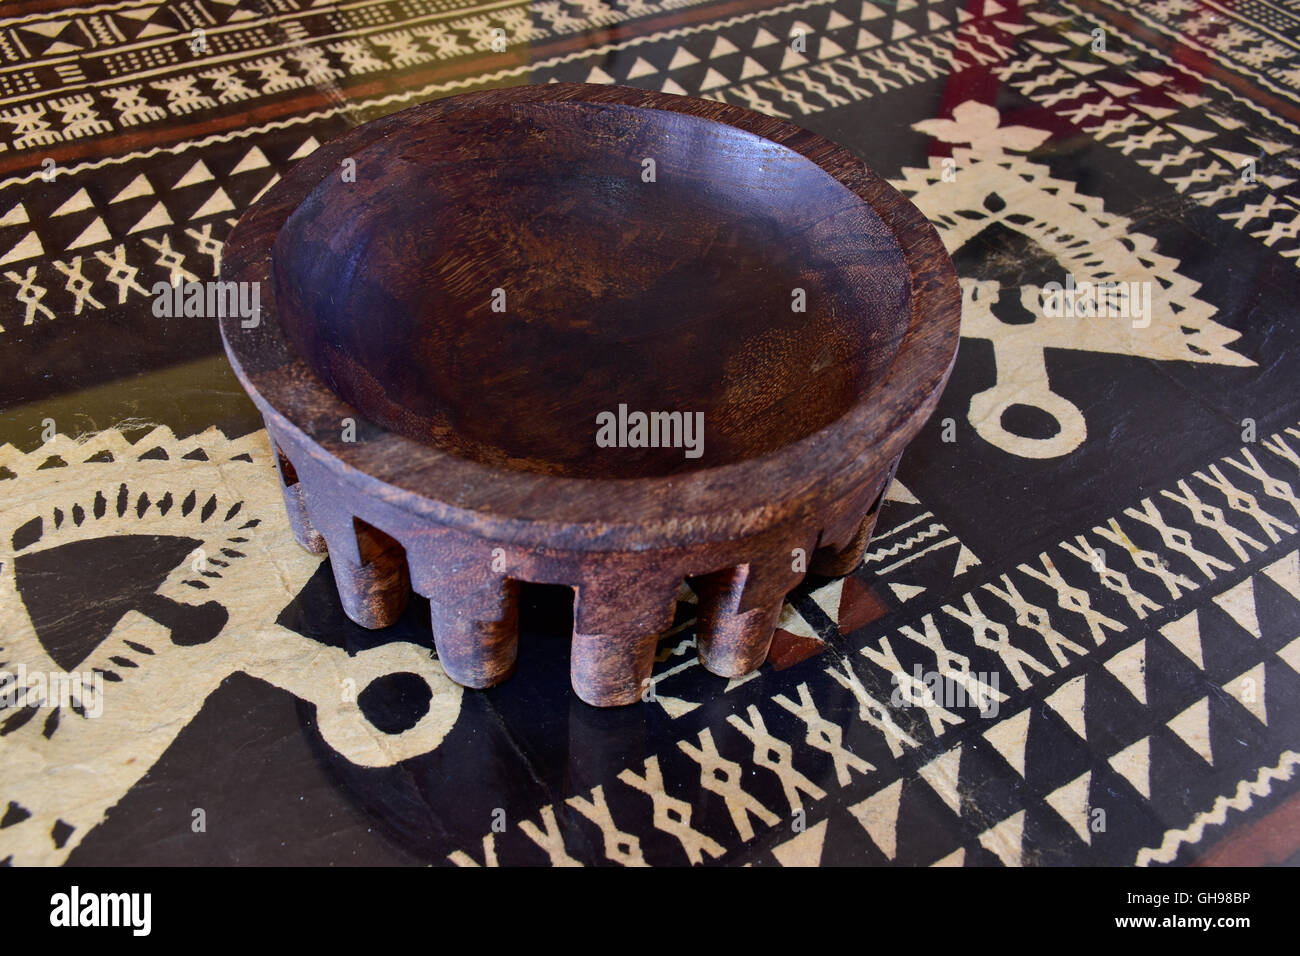 Antike Samoan tanoa oder laulau kava Schüssel aus Holz geschnitzt. Samoan Tapa Tuch unter Glas auf dem Tisch. Stockfoto